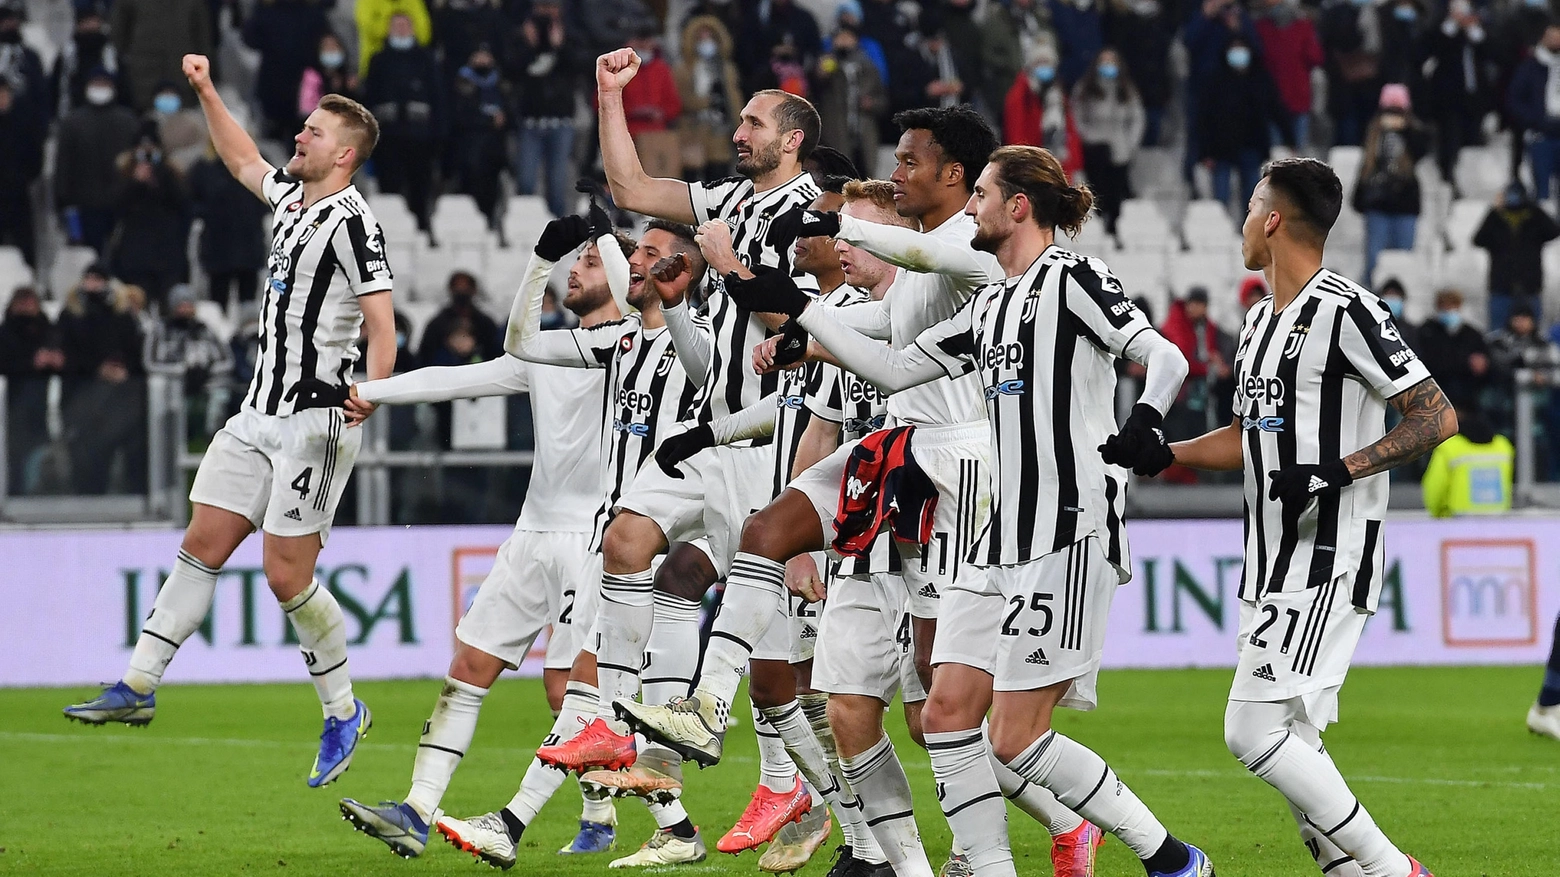 L'esultanza della Juventus 